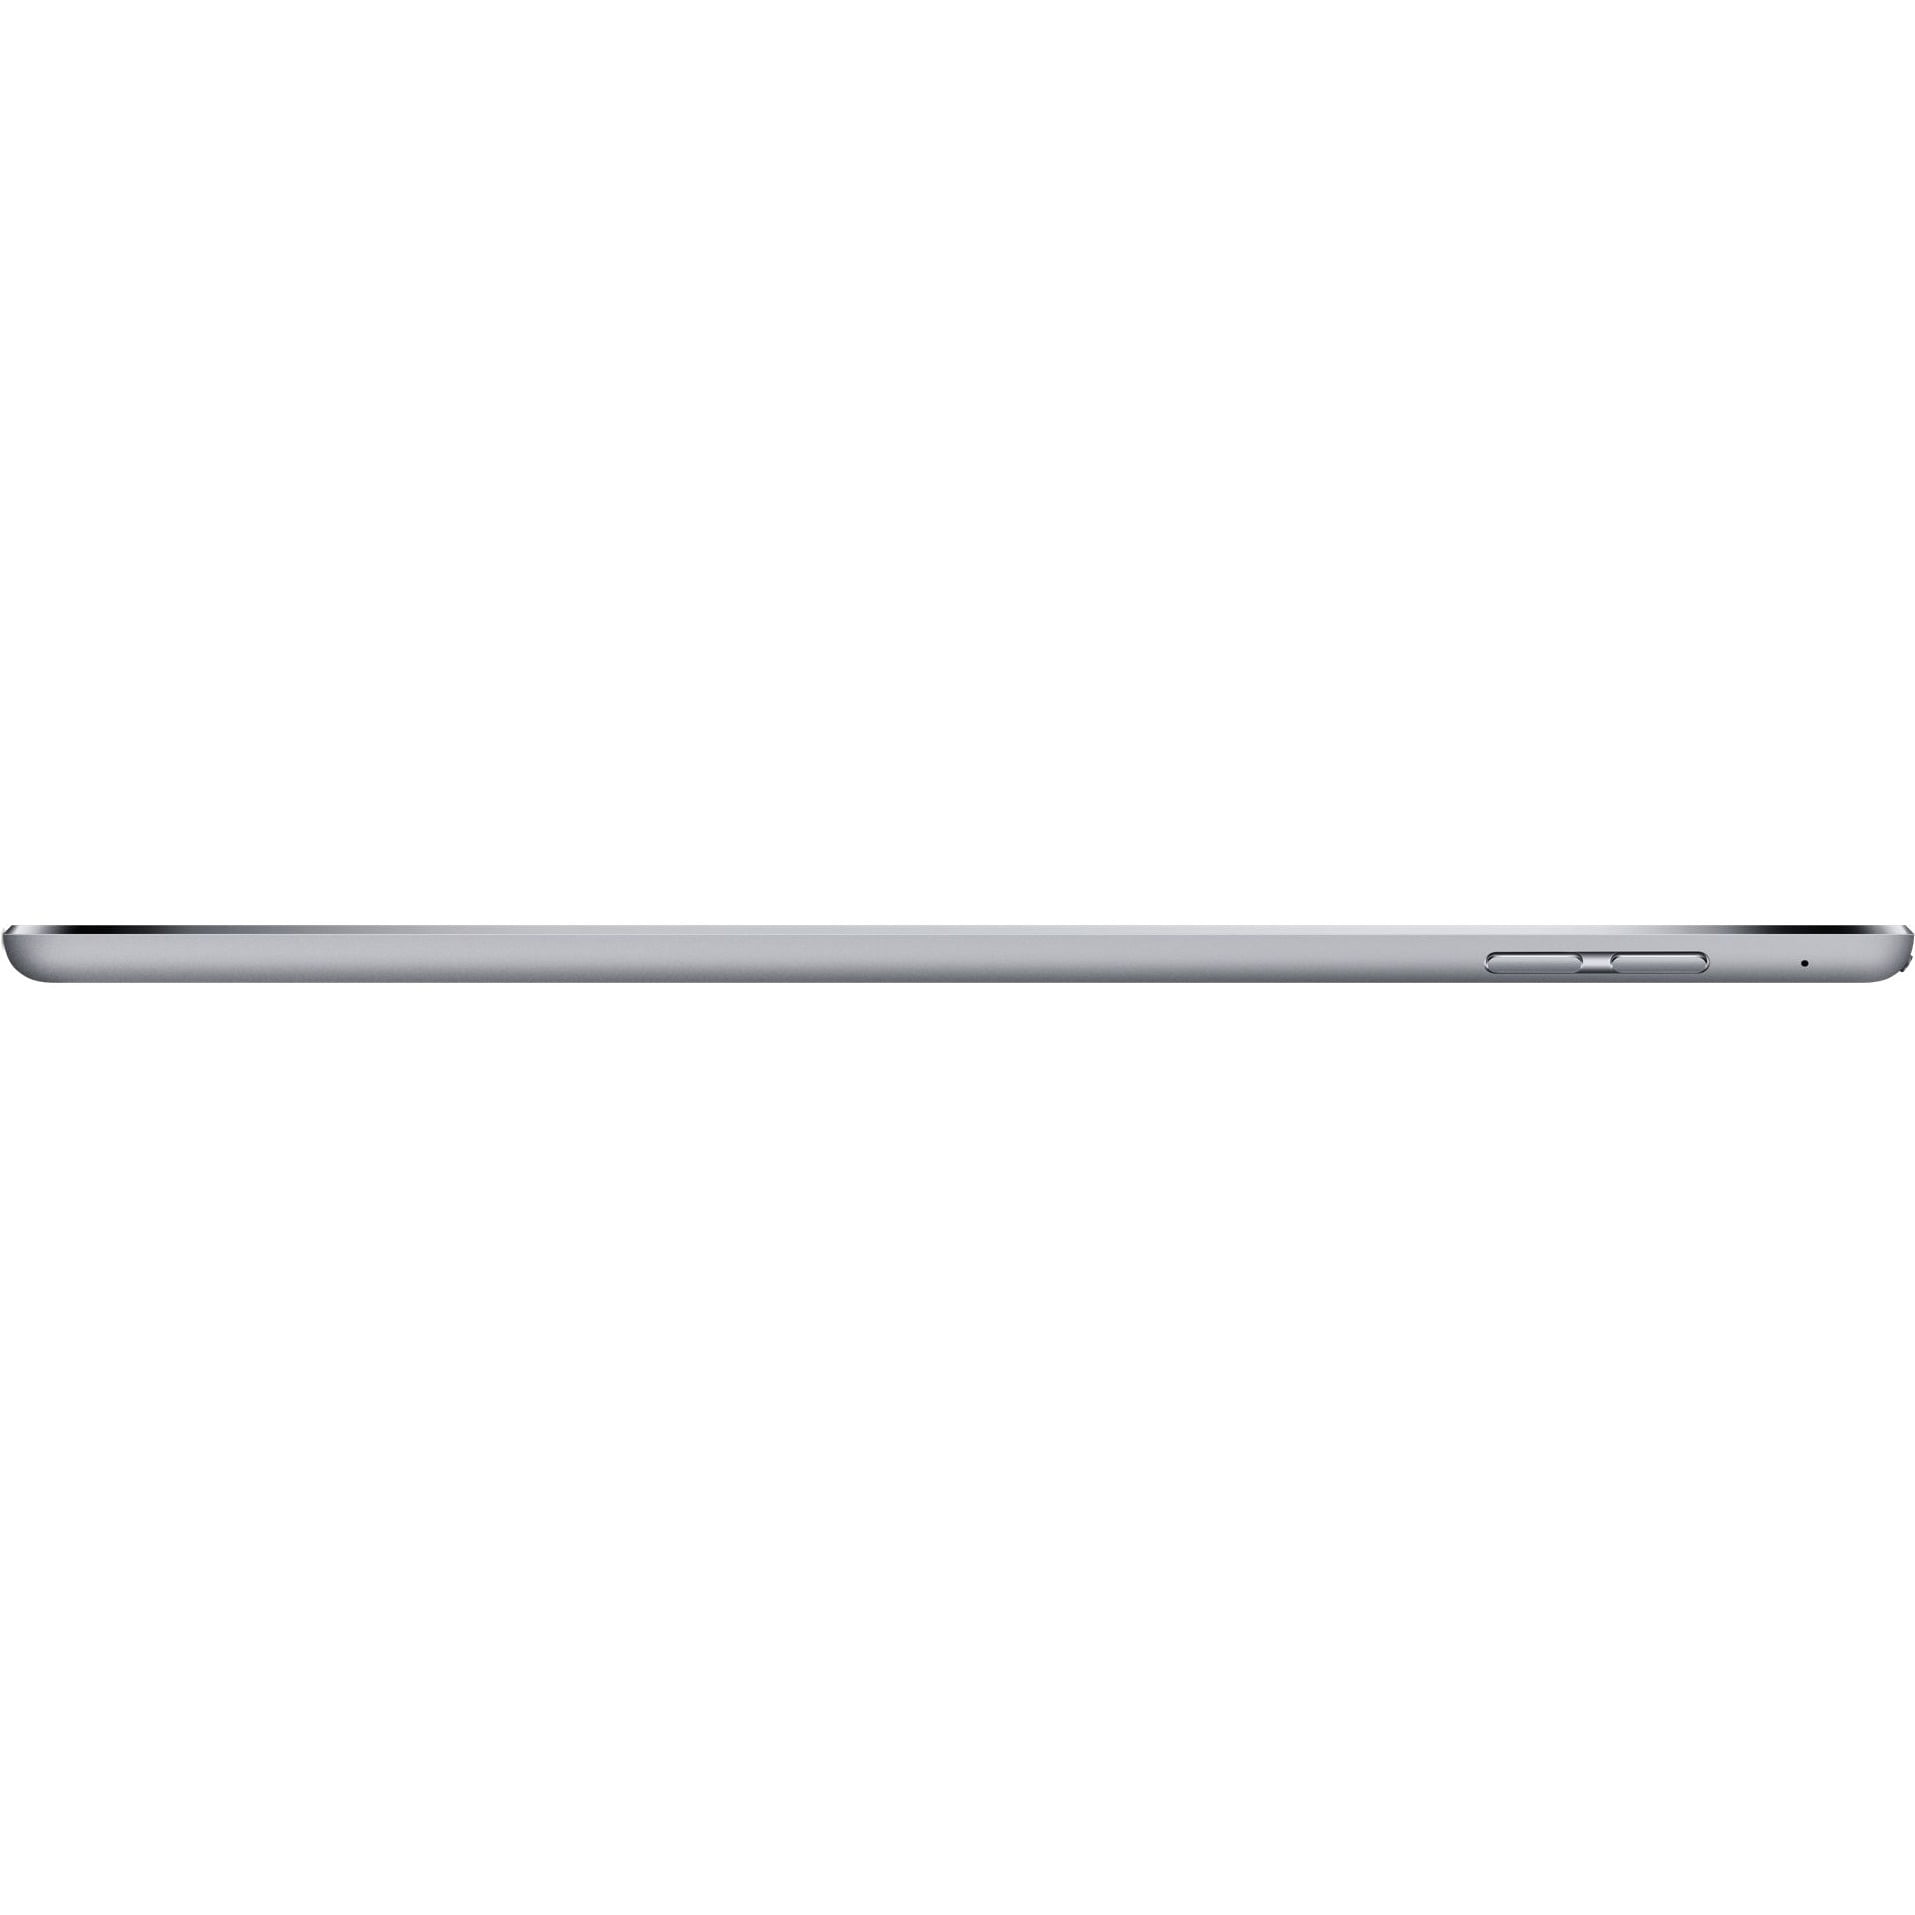 iPad mini 4 Wi-Fi 16GB - Space Gray - Walmart.com